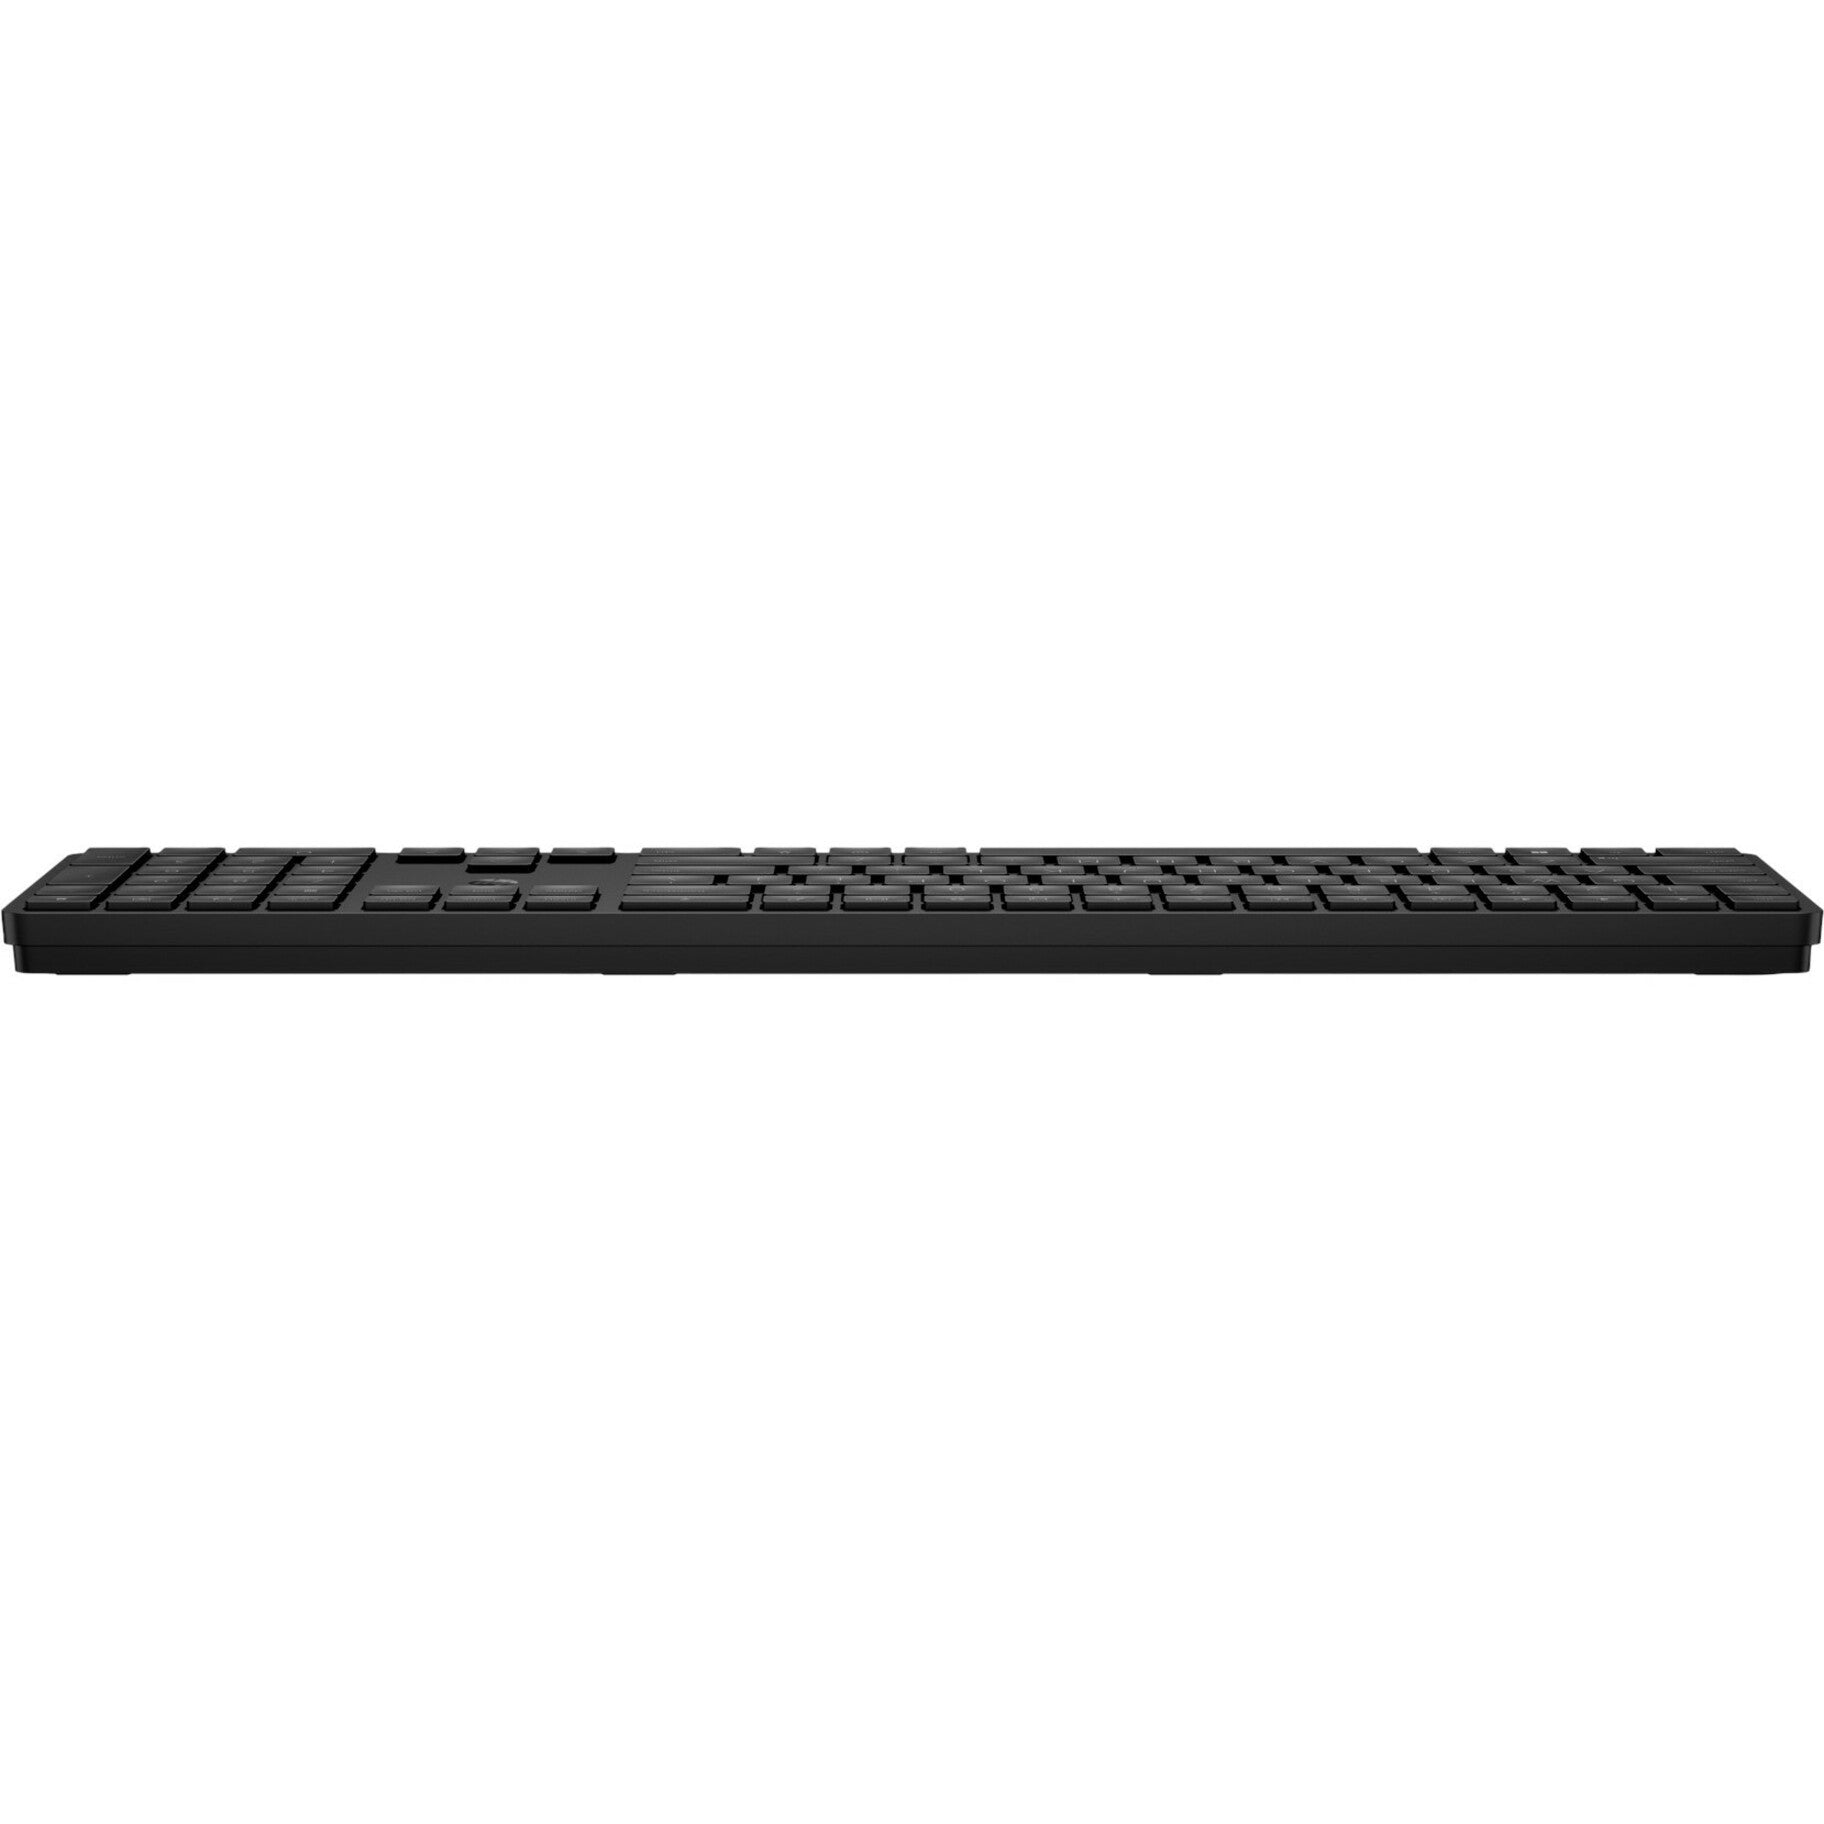 HP 455 Programmable Wireless Keyboard English (US) Battery Indicator LED Indicator